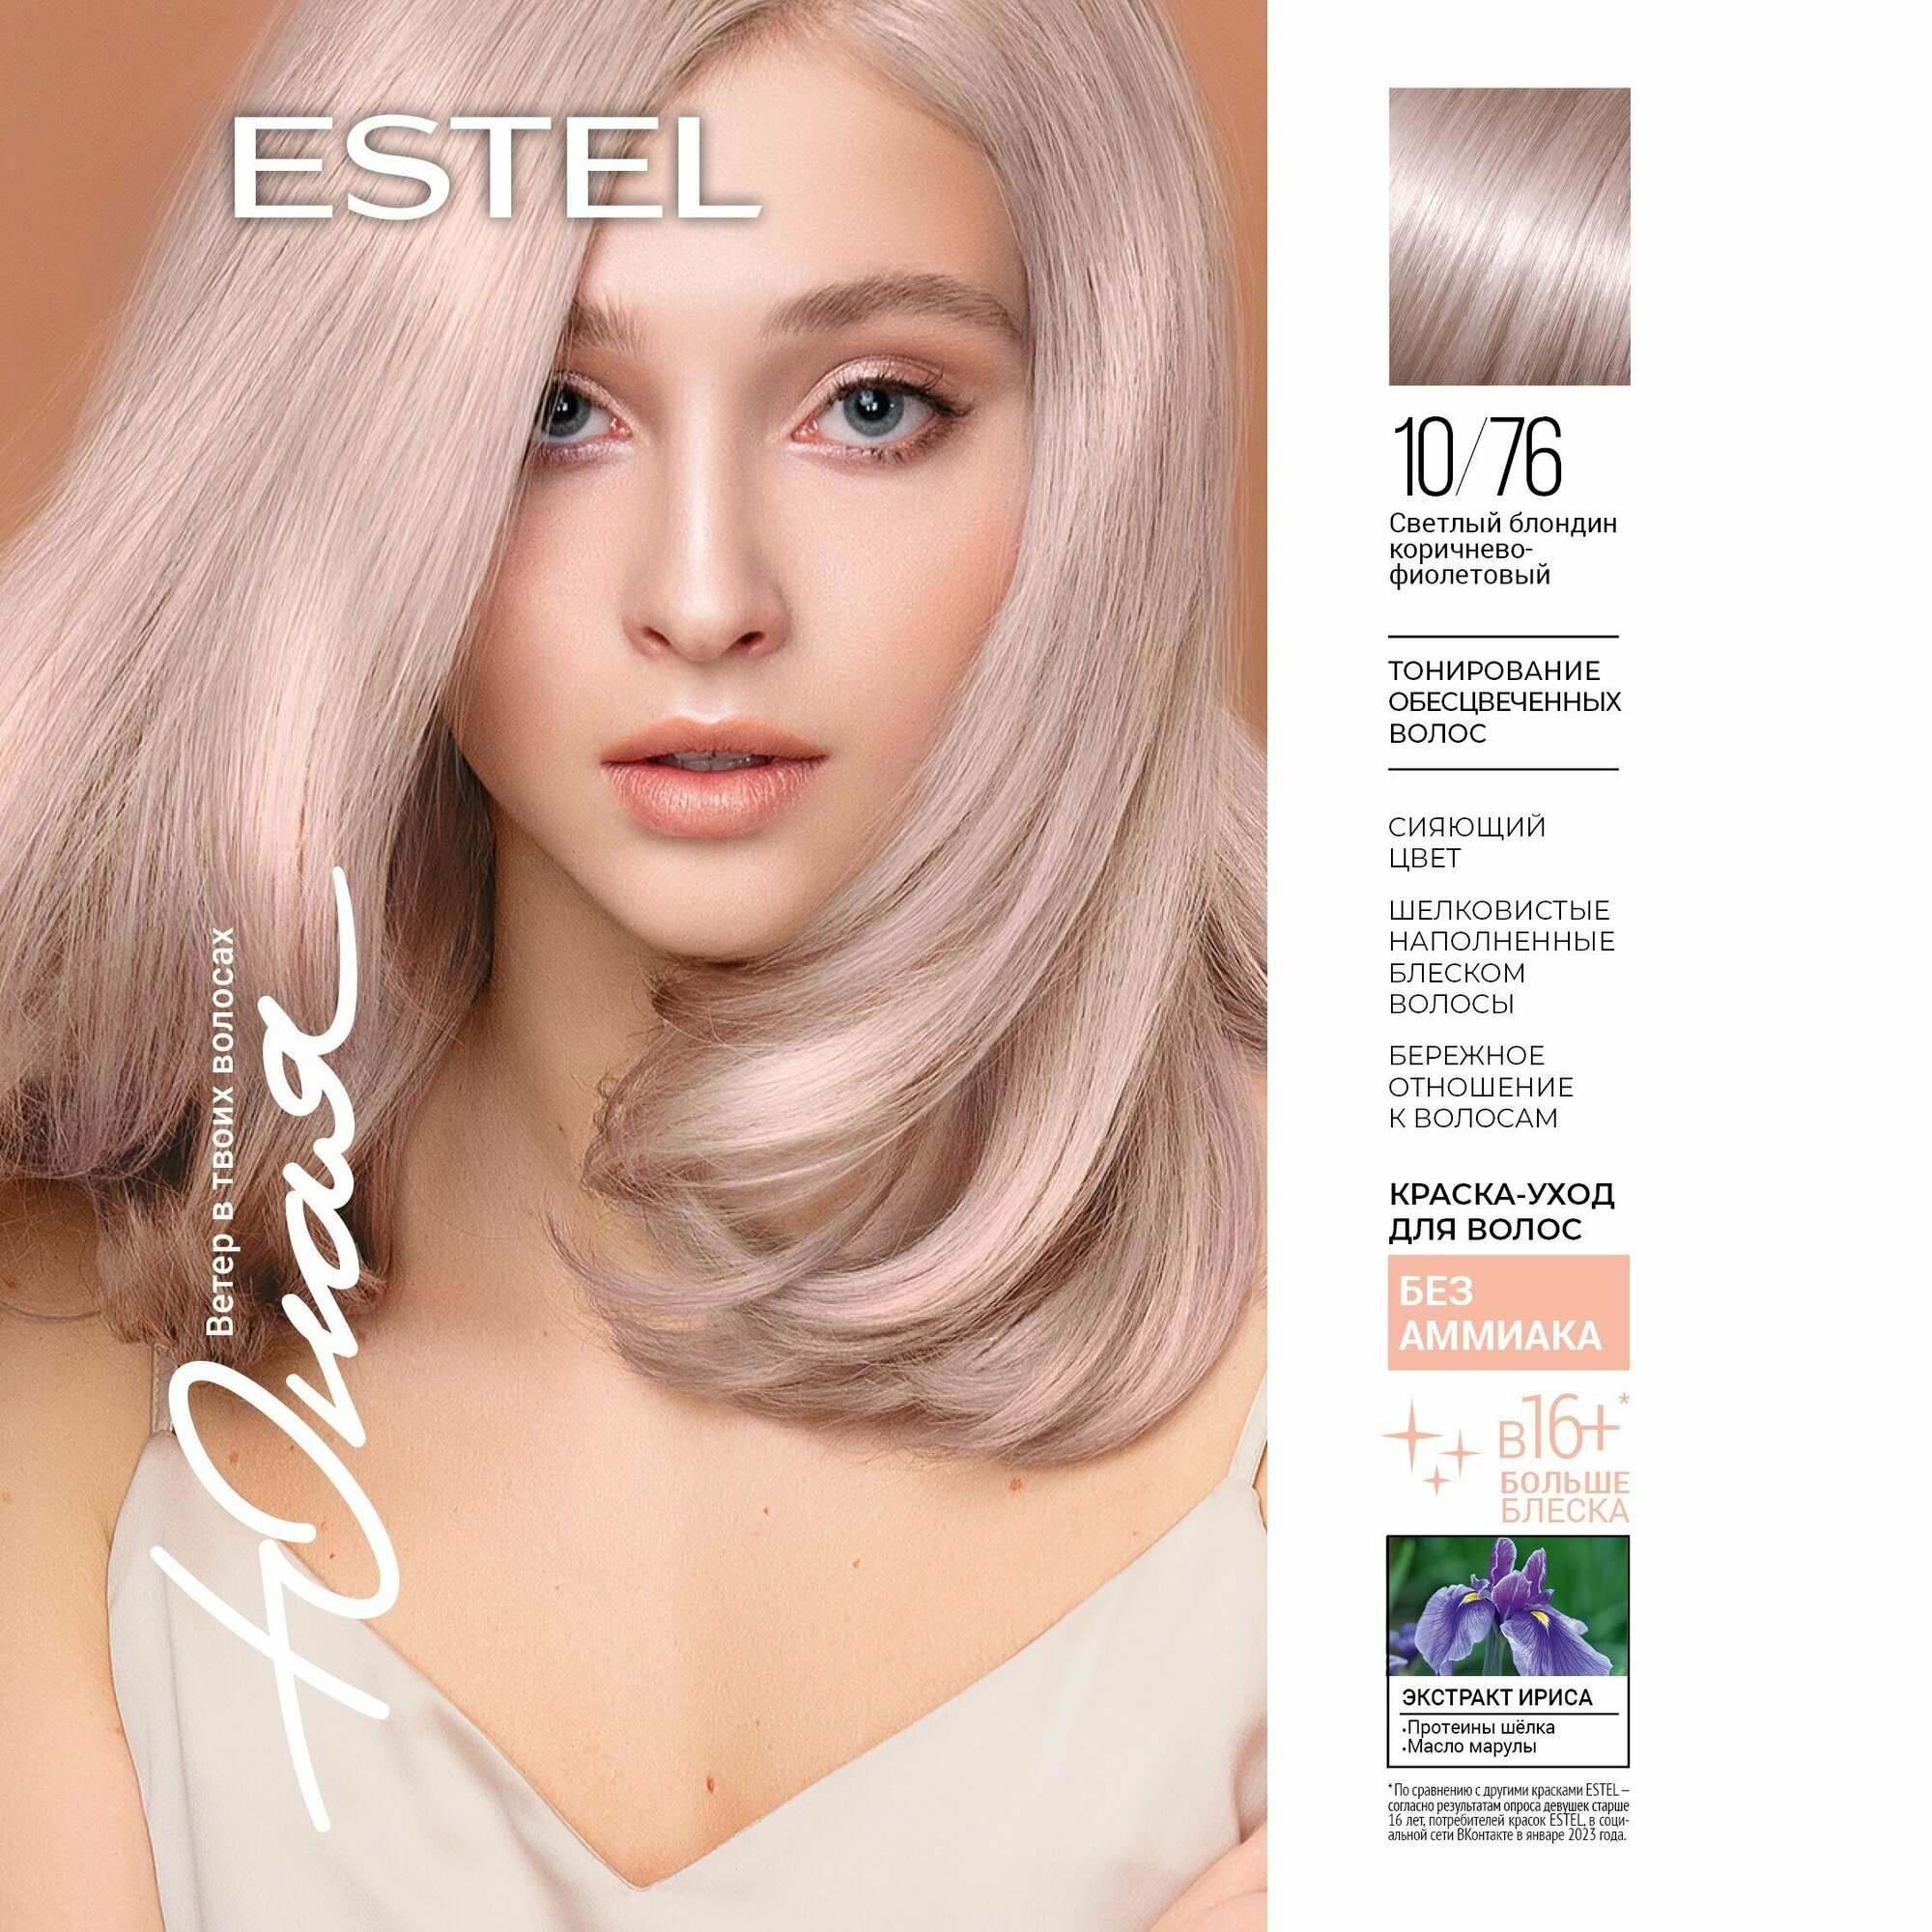 ESTEL Краска-уход для волос без аммиака юная 10/76 светлый блондин коричнево-фиолетовый